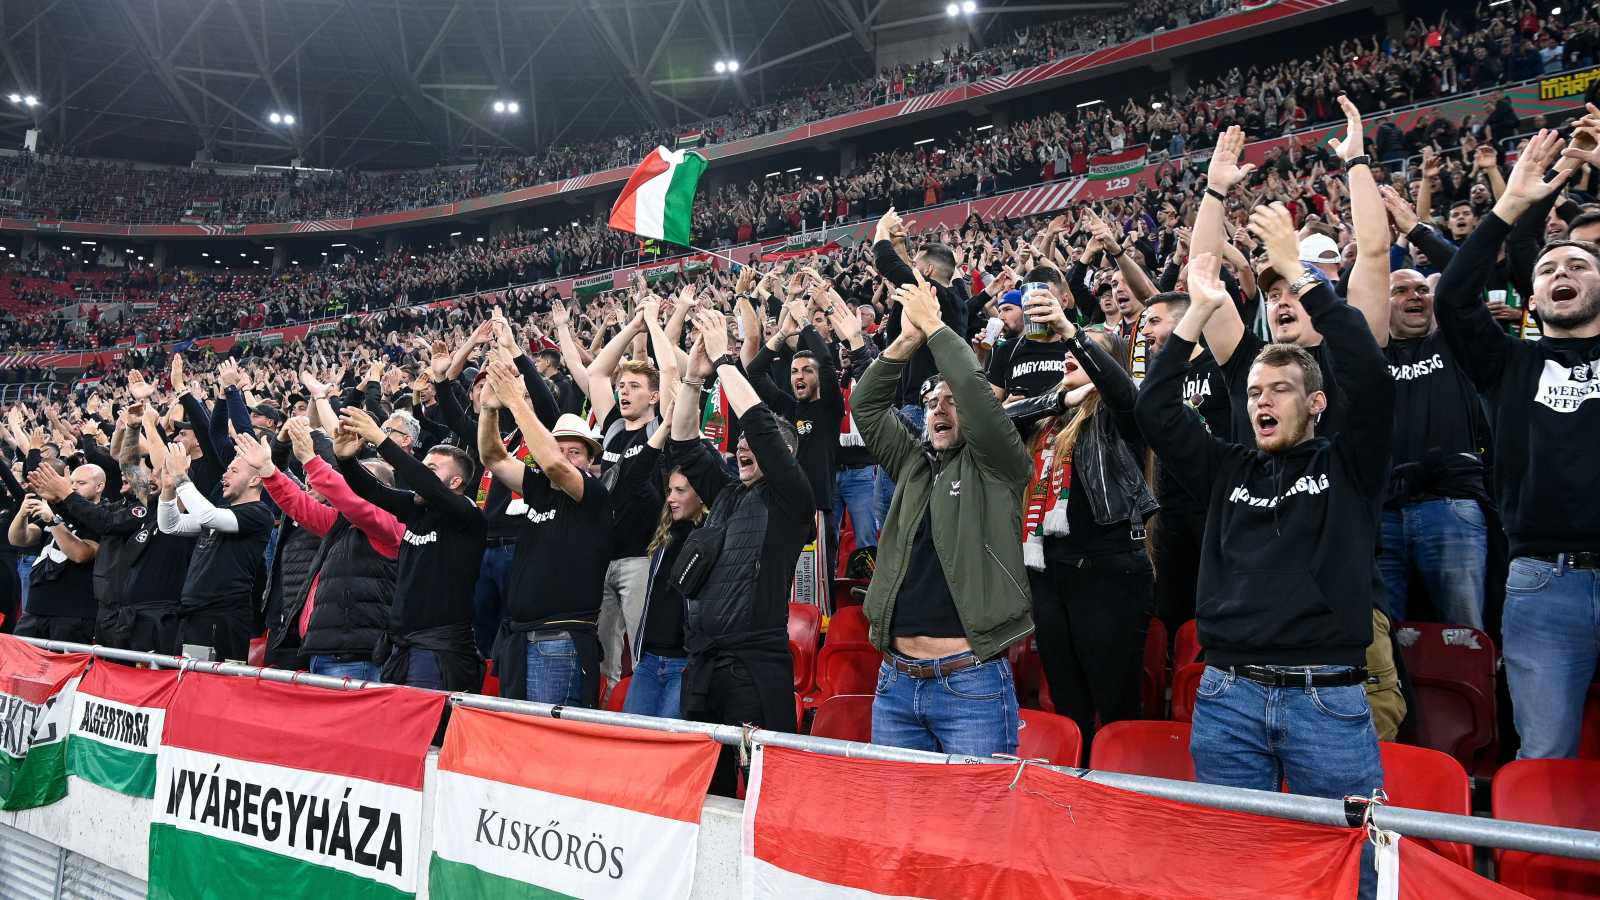 Magyar szurkolók a labdarúgó Nemzetek Ligája A divíziója 3. csoportjában játszott Magyarország - Olaszország mérkőzés előtt a Puskás Arénában | Fotó: MTI